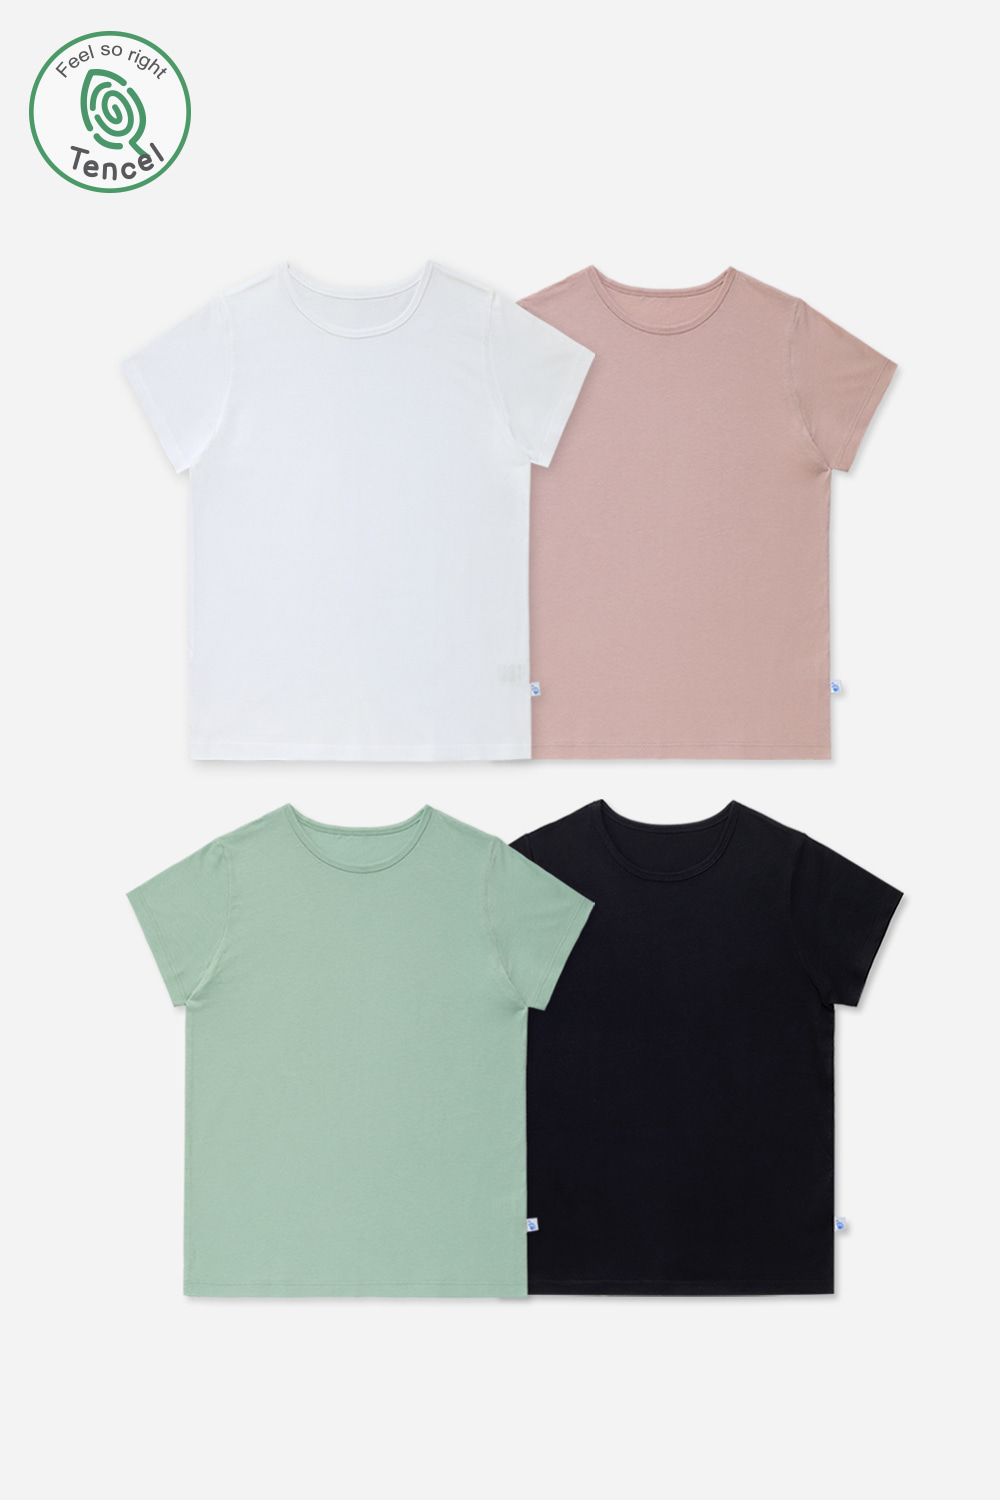 살랑텐셀 티셔츠 (4종세트)잠옷, 홈웨어, 아동내복, 아동속옷,성인잠옷,고후나비